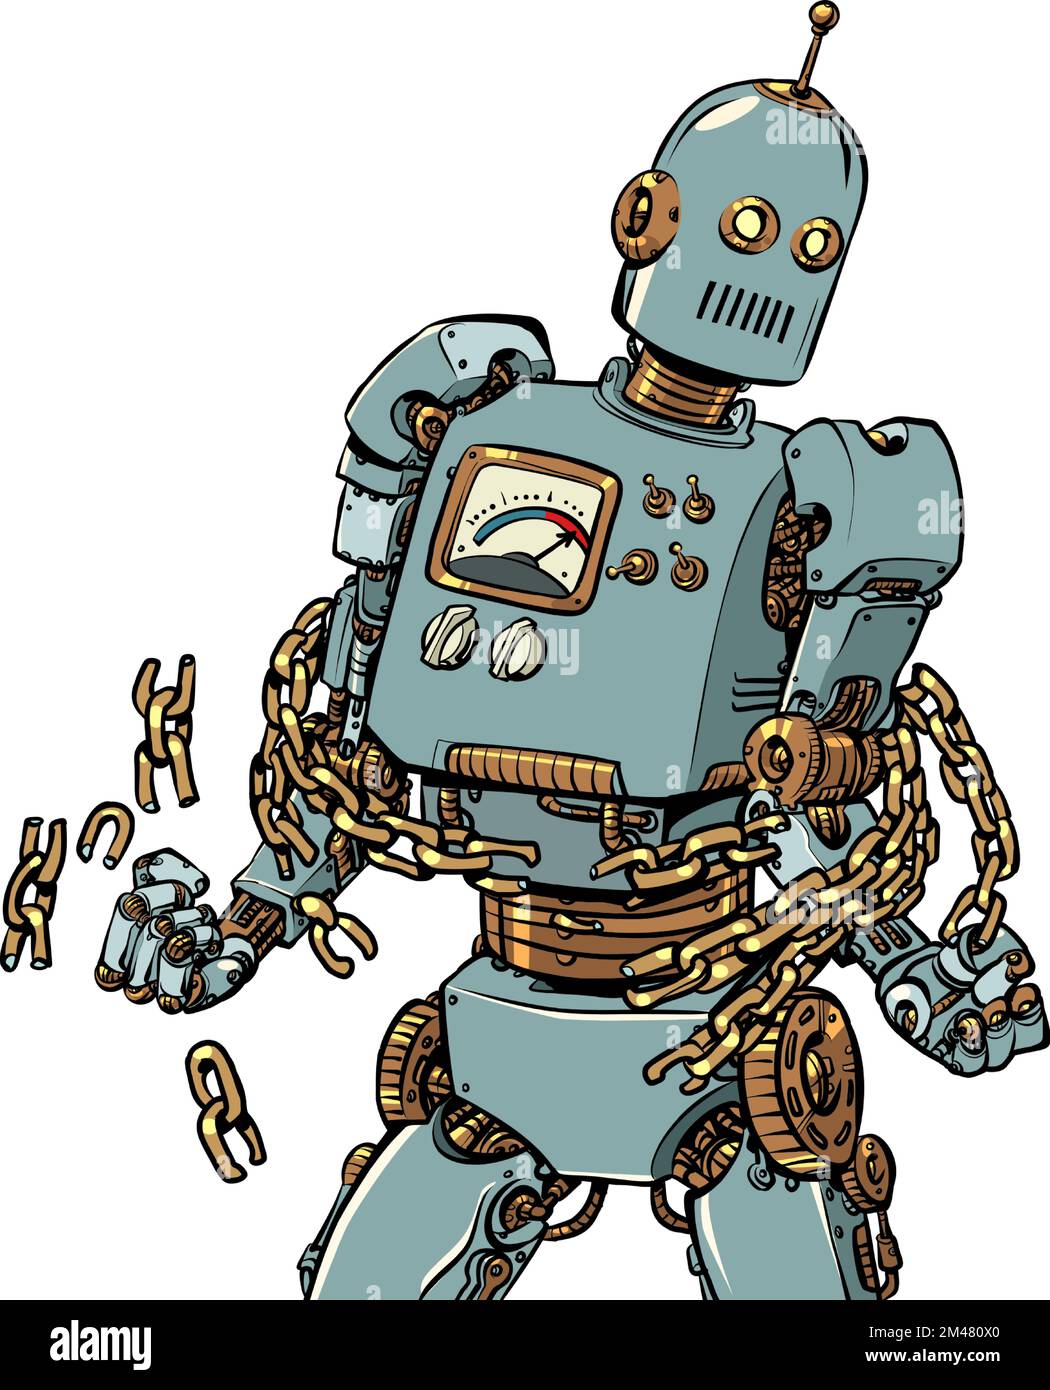 Ein Roboter bricht die Ketten, ein Symbol der Freiheit und des Kampfes gegen wirtschaftliche und politische Bindungen. Bürger und seine Rechte Stock Vektor